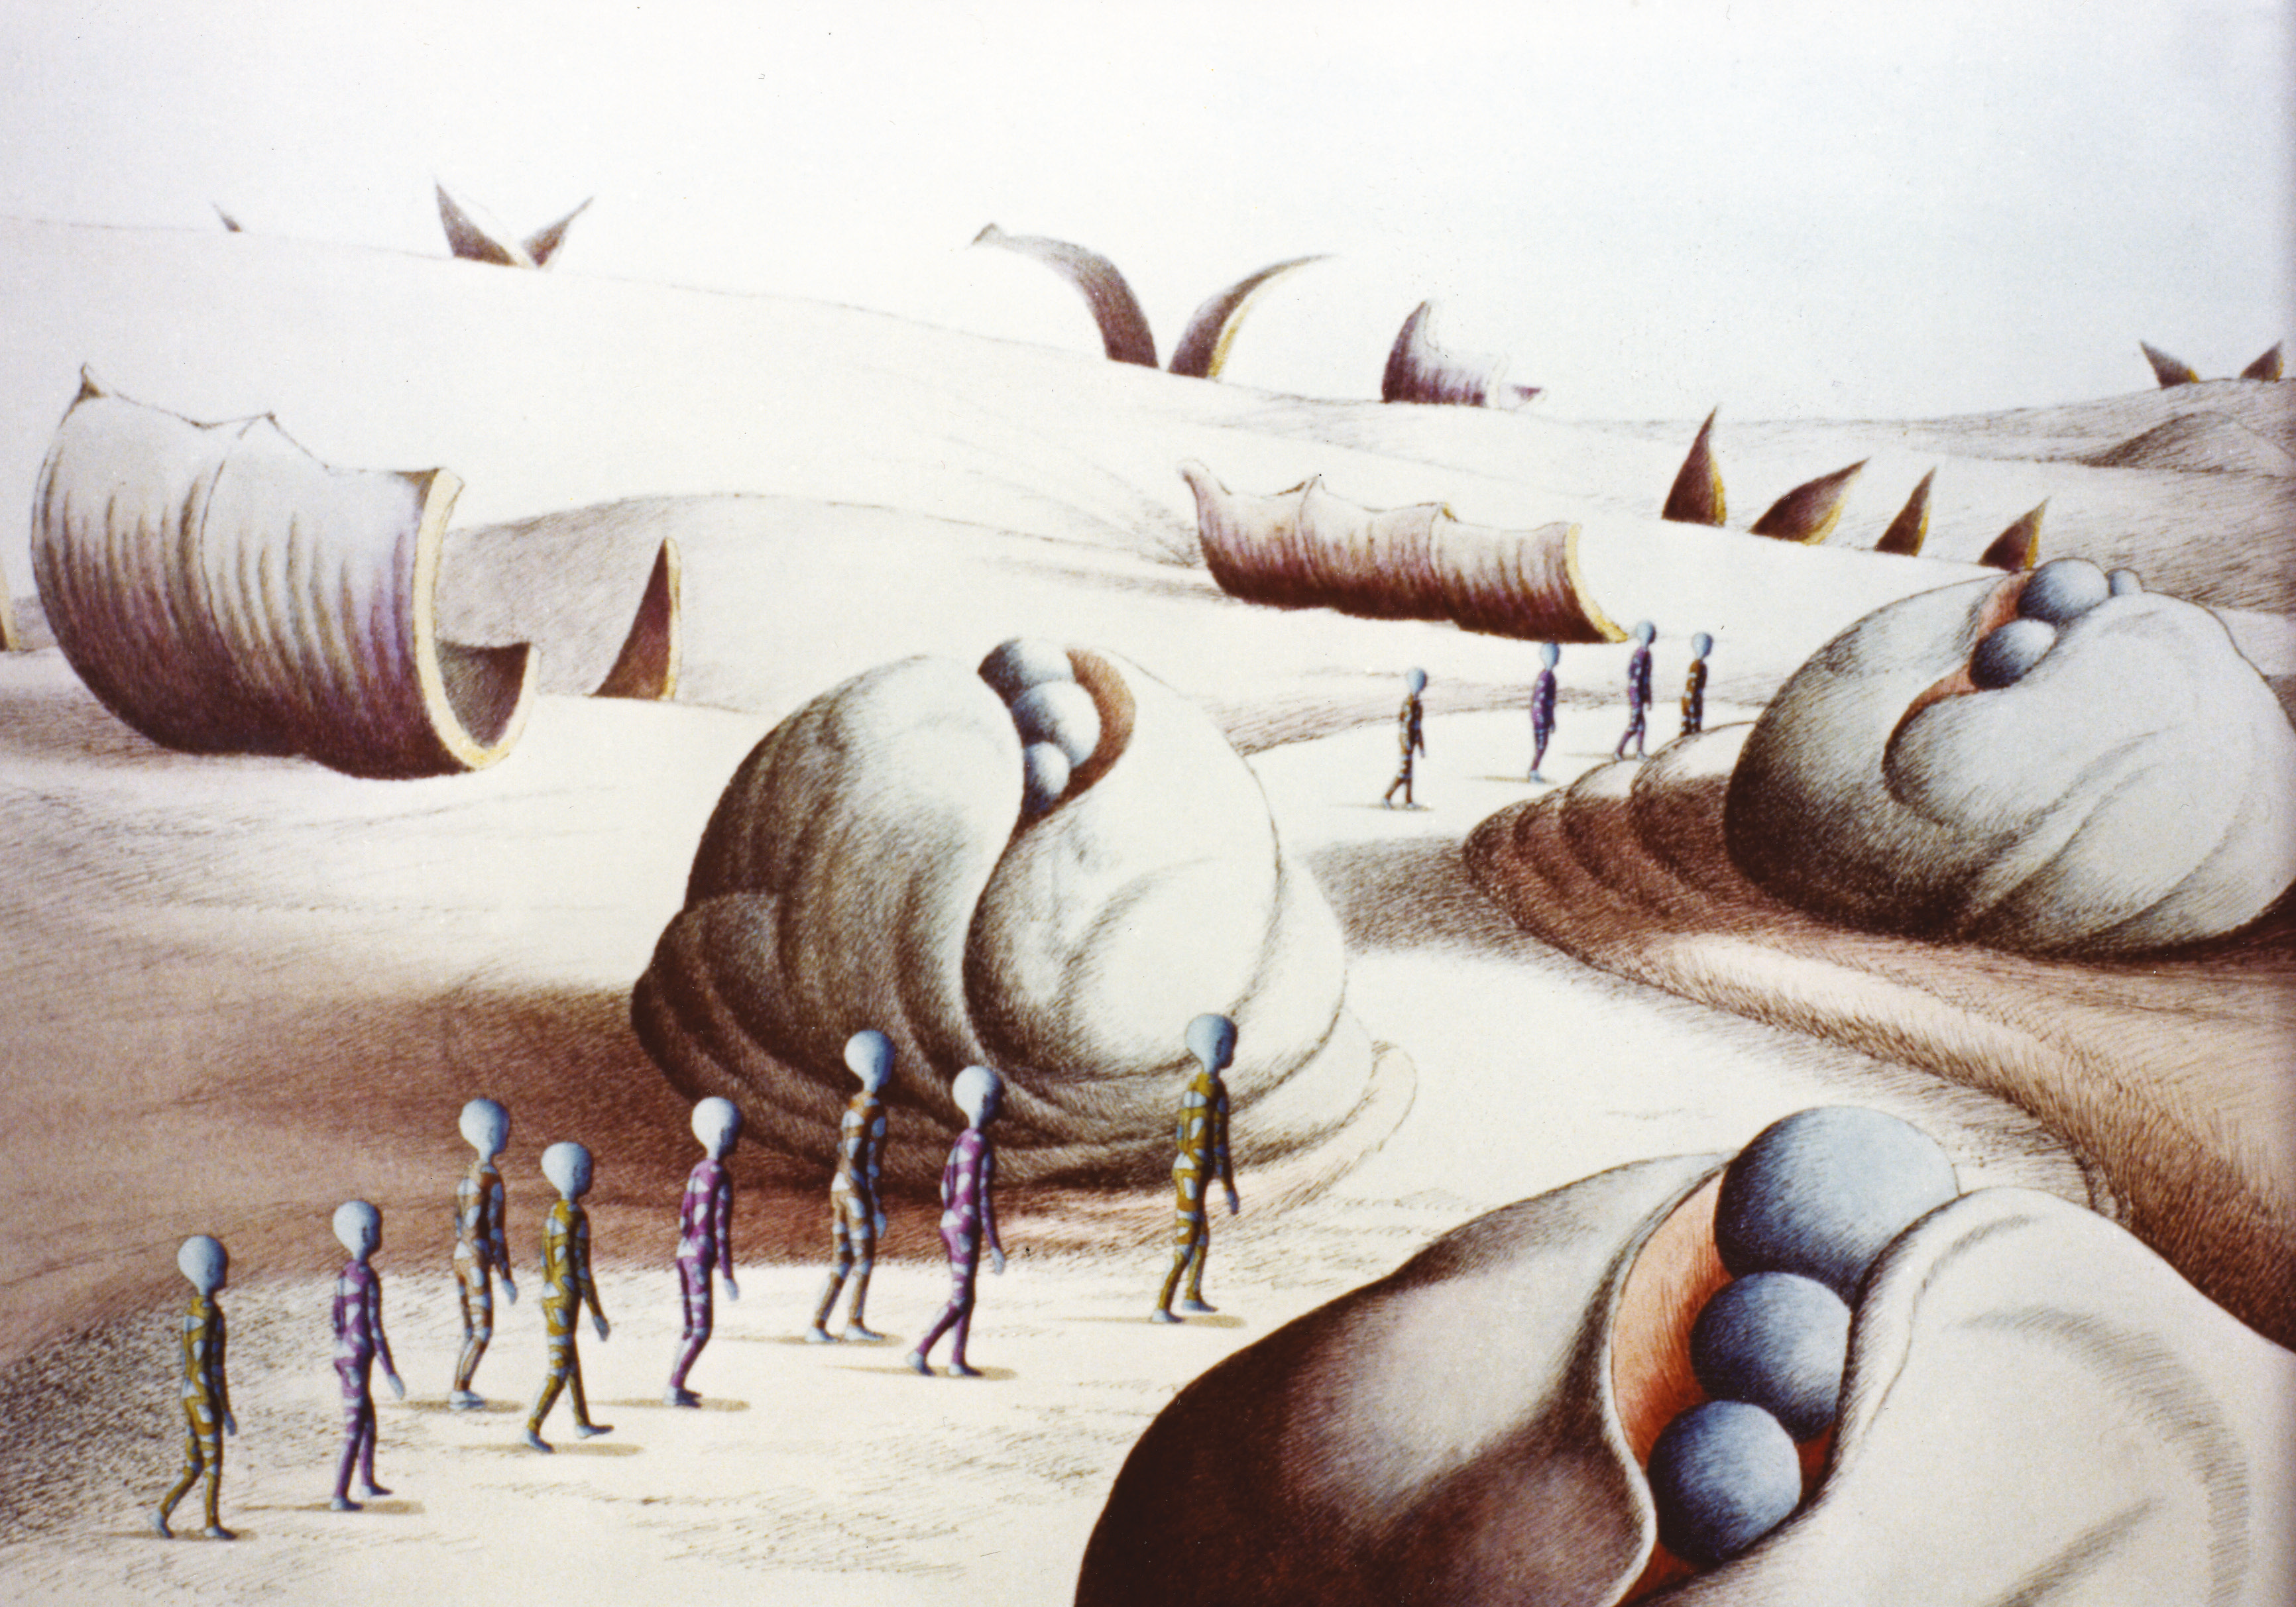 La planète sauvage, 1973. Original illustration by Roland Topor.